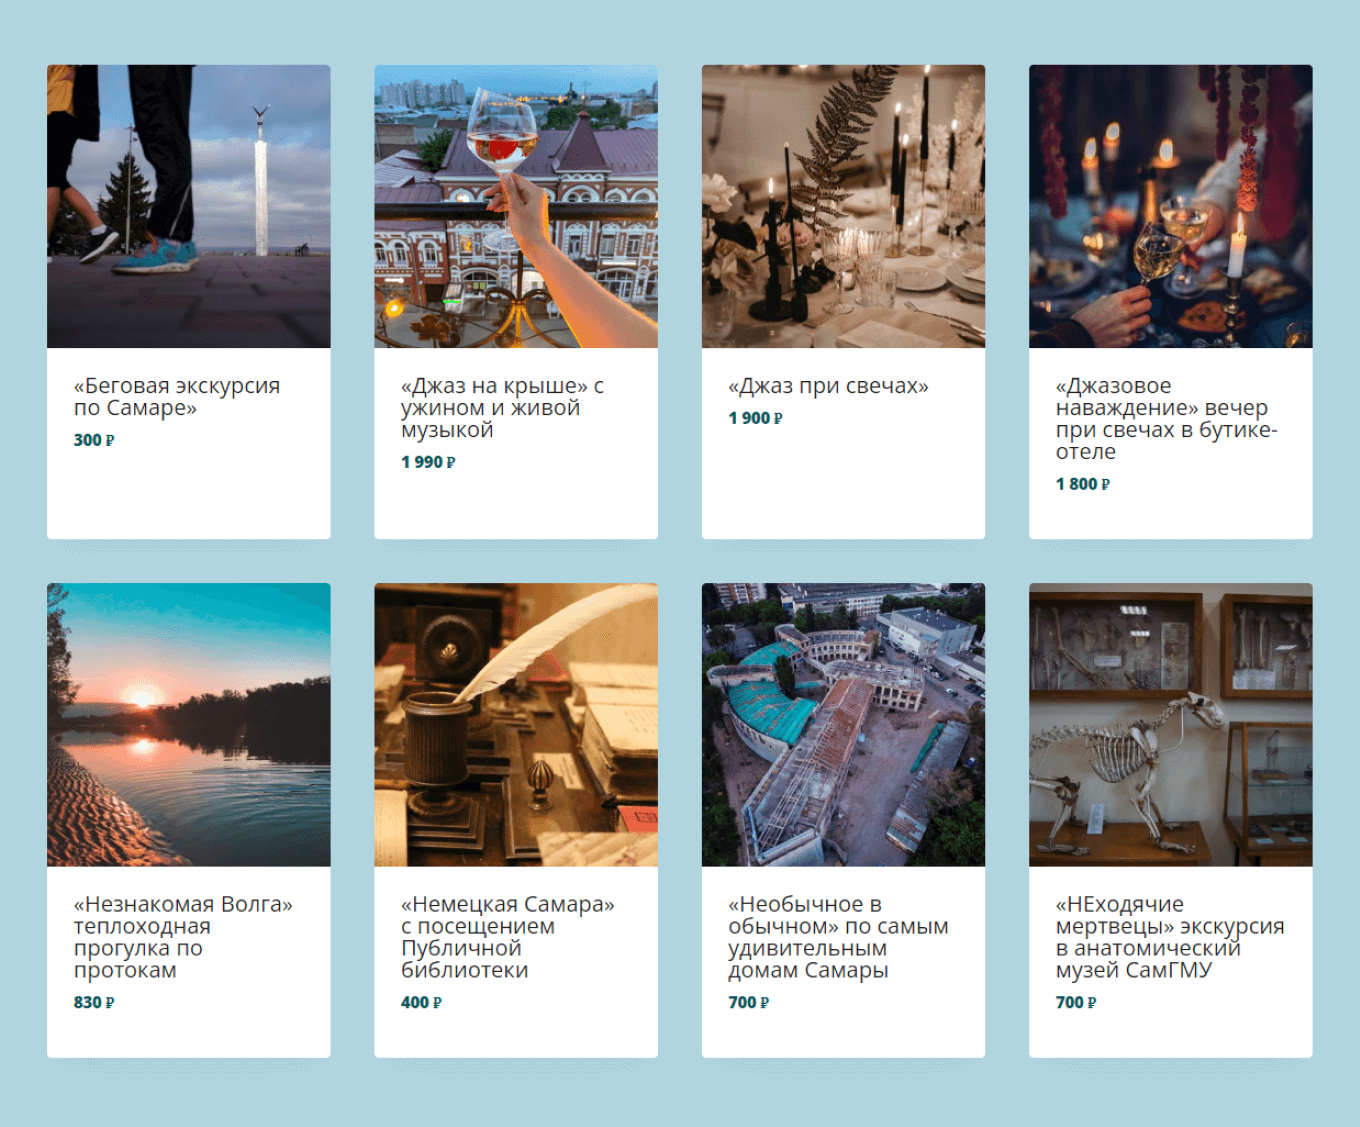 Список экскурсий от компании «Город-курорт» в Самаре